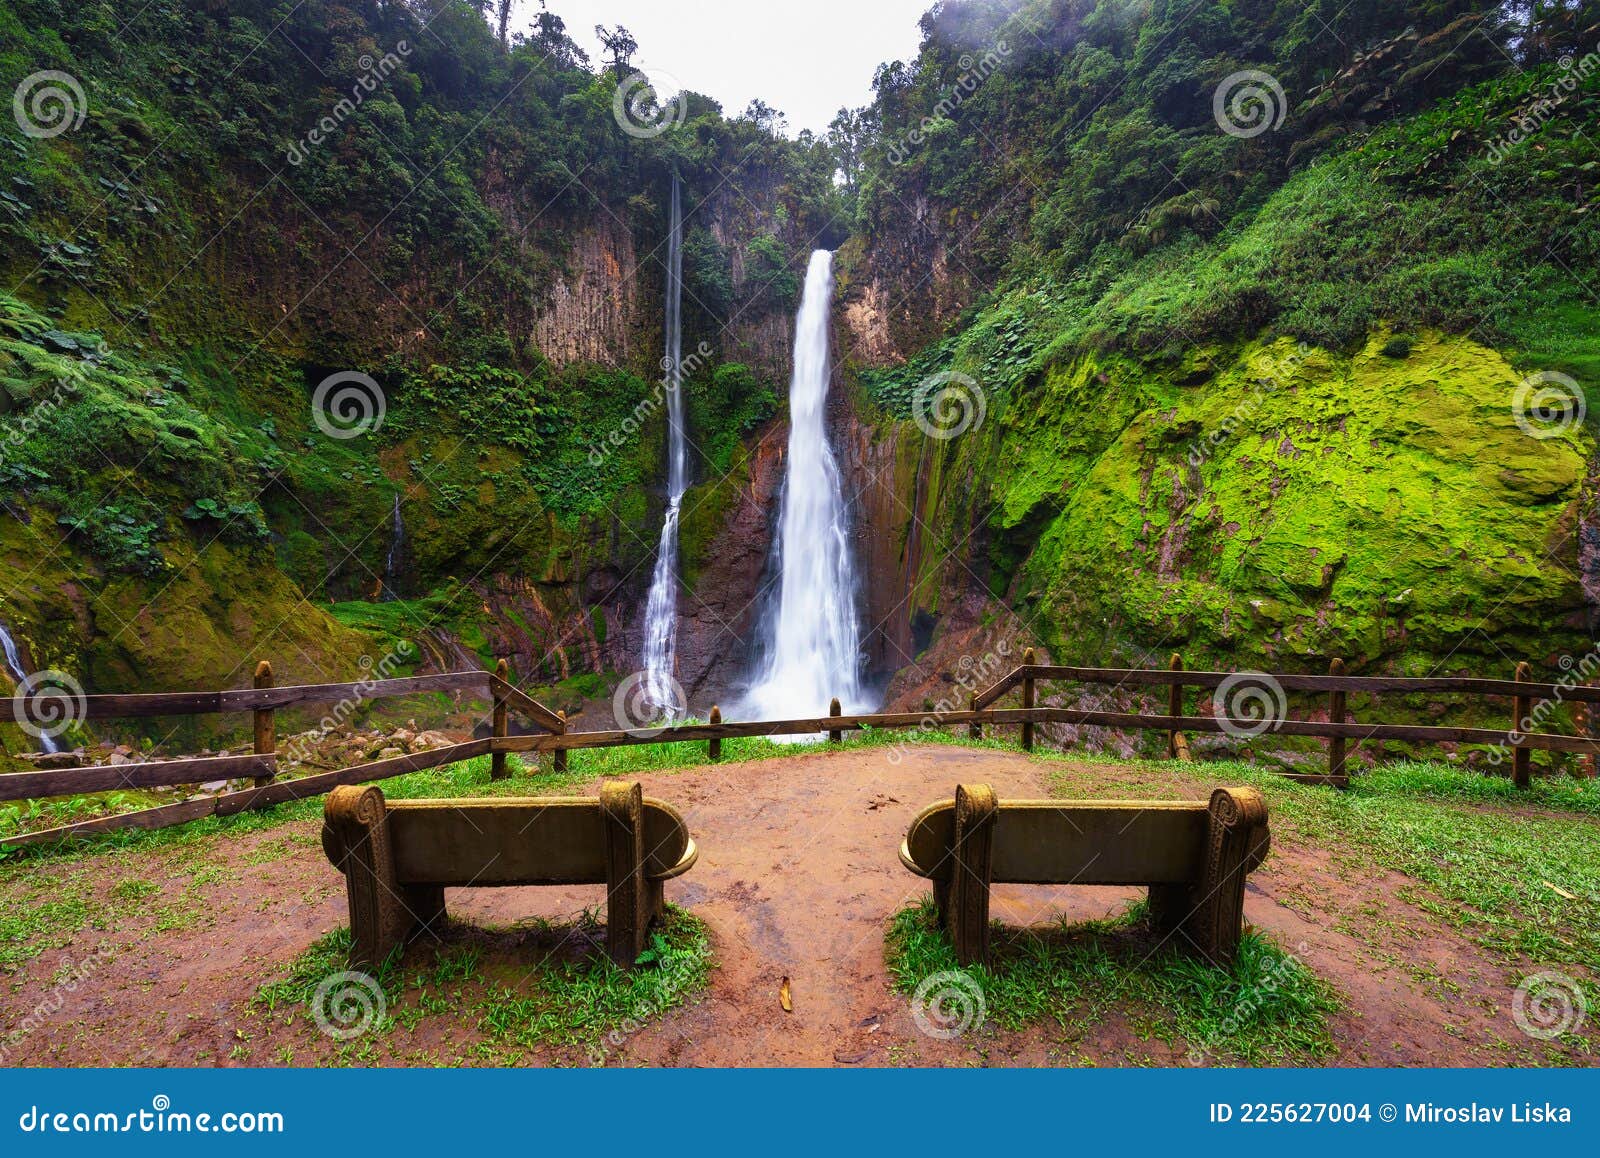 empty benches at the catarata del toro waterfall in costa rica